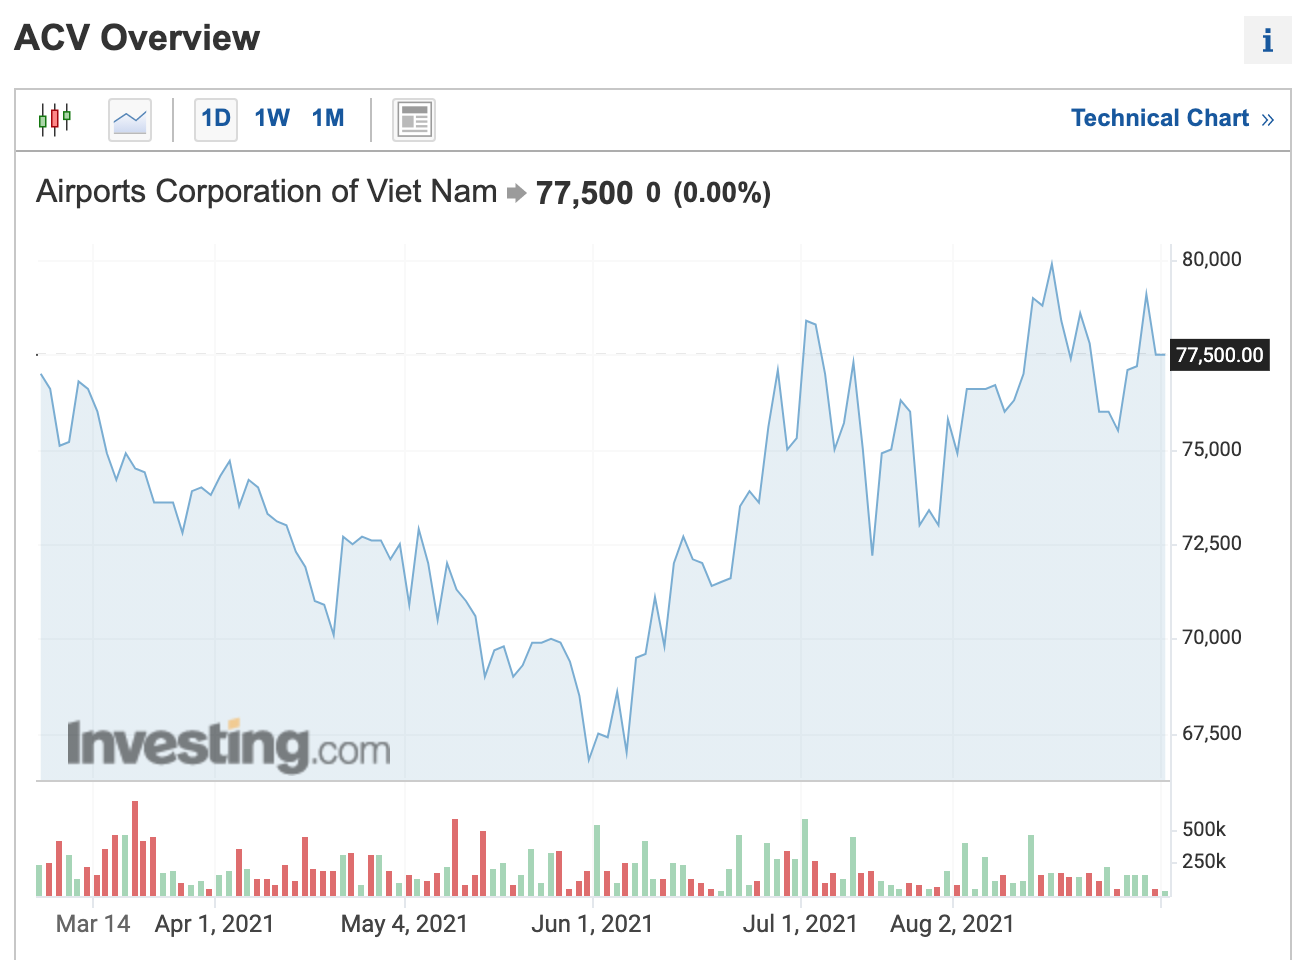 Đồ thị giá cổ phiếu ACV trên thị trường chứng khoán thời gian qua. Ảnh chụp màn hình